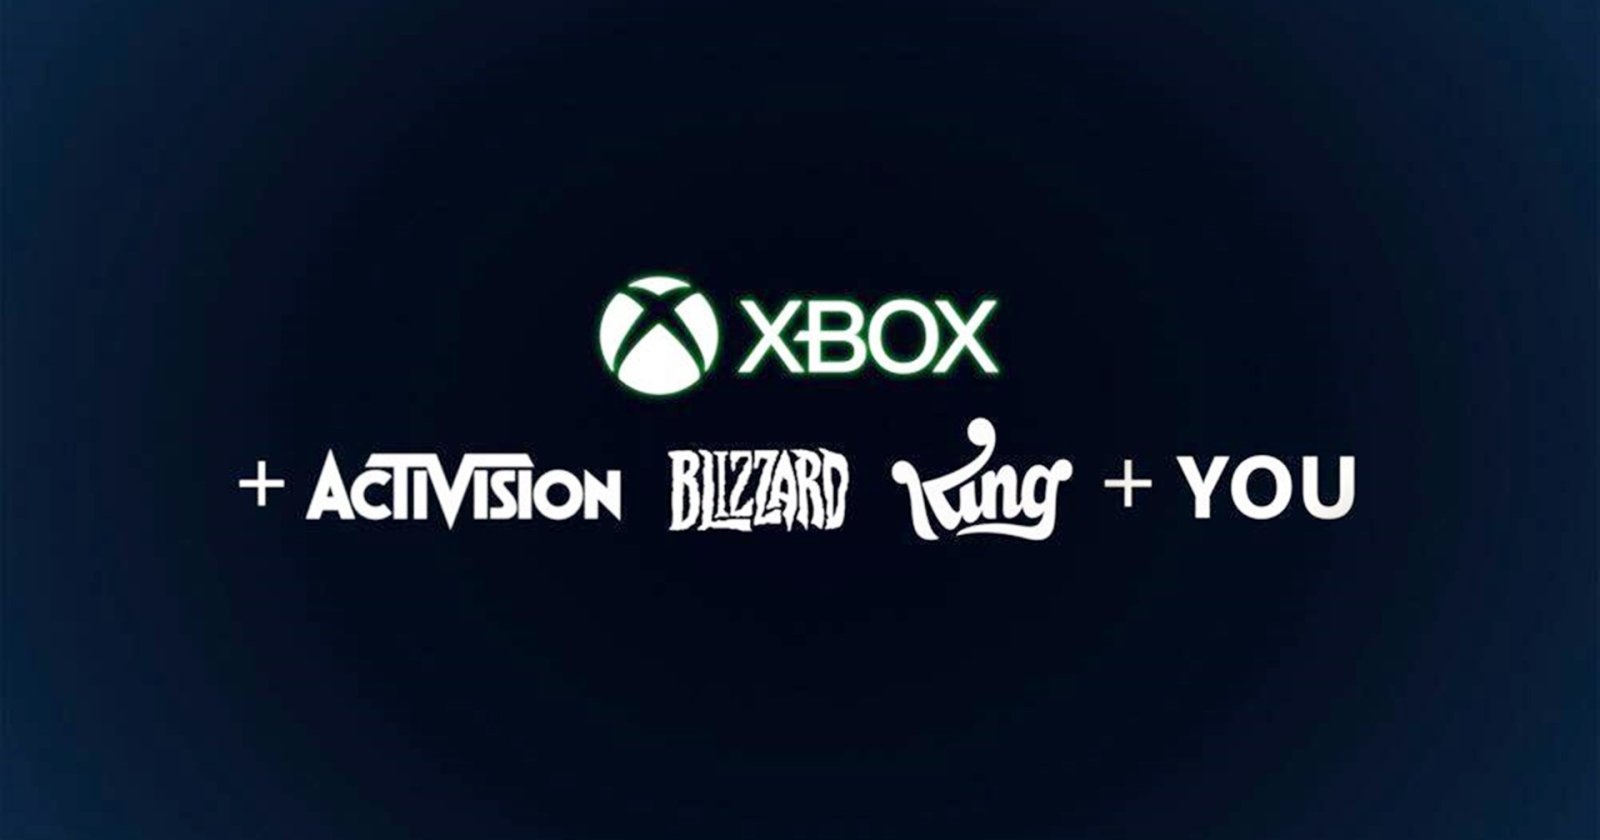 แฟรนไชส์เกม Activision Blizzard ทั้งหมดตอนนี้เป็นของ Microsoft แล้ว